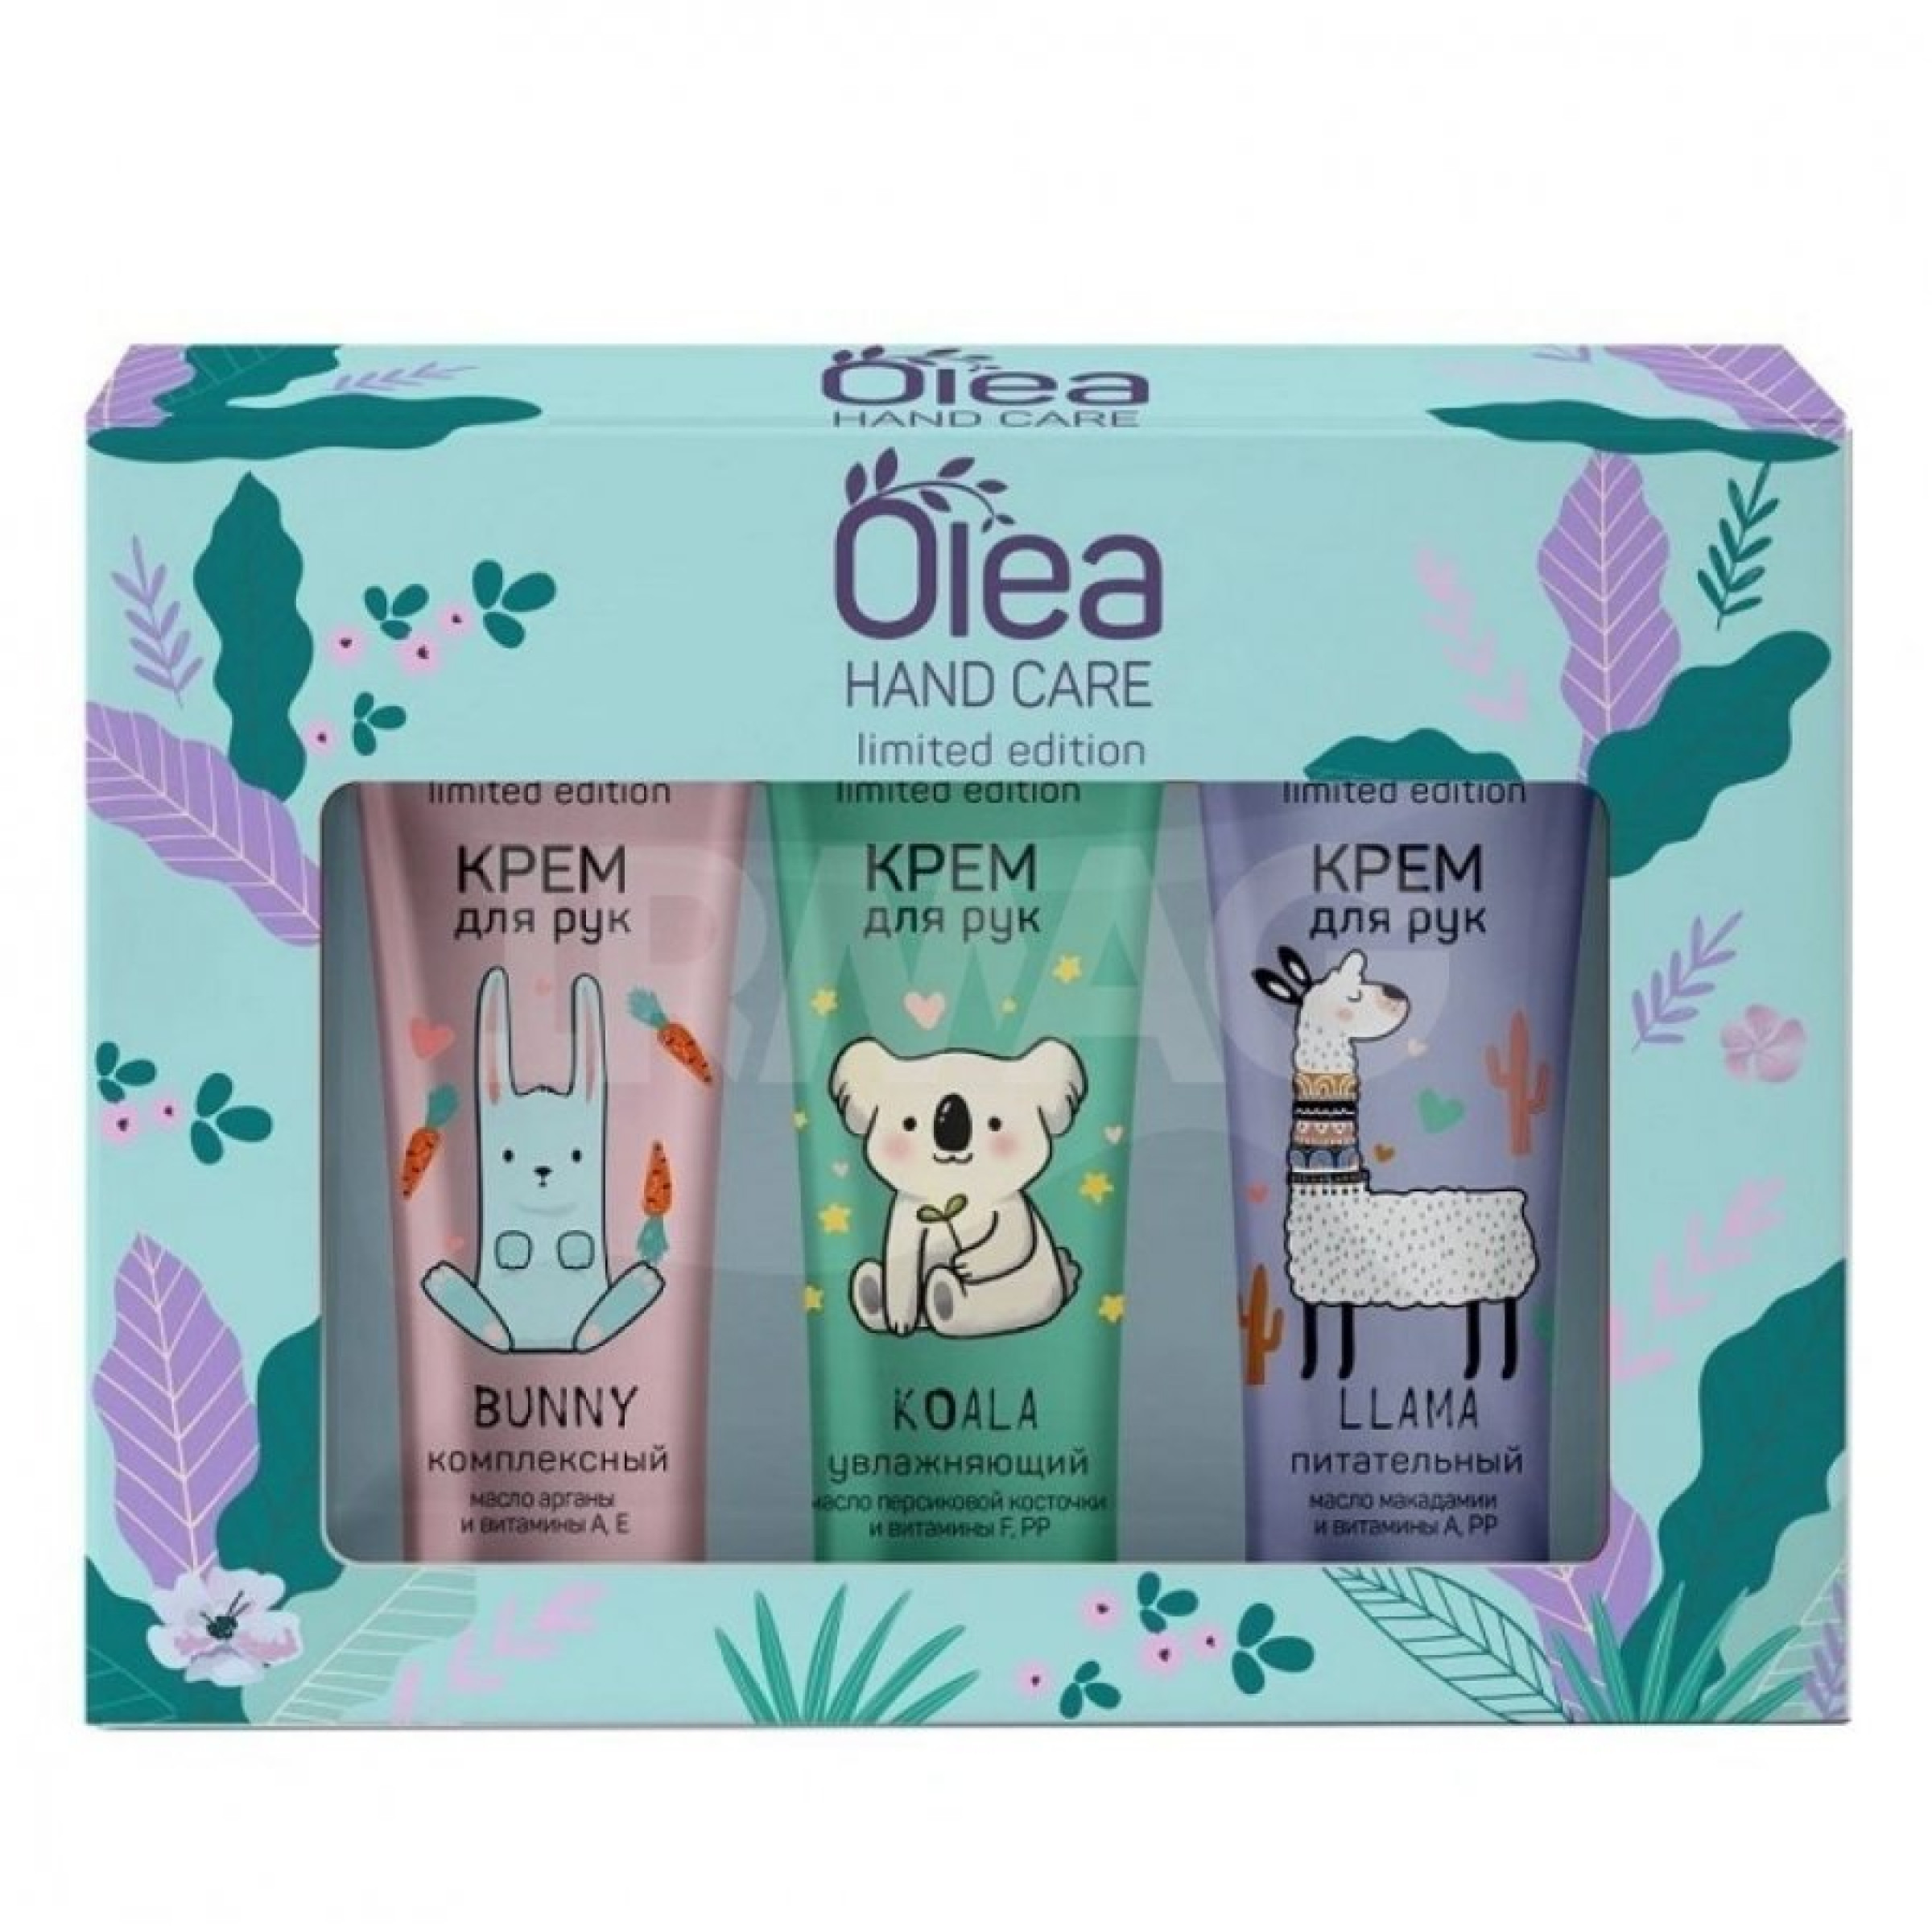 Набор подарочный Olea Hand Care Limited Edition: крем для рук 3 шт